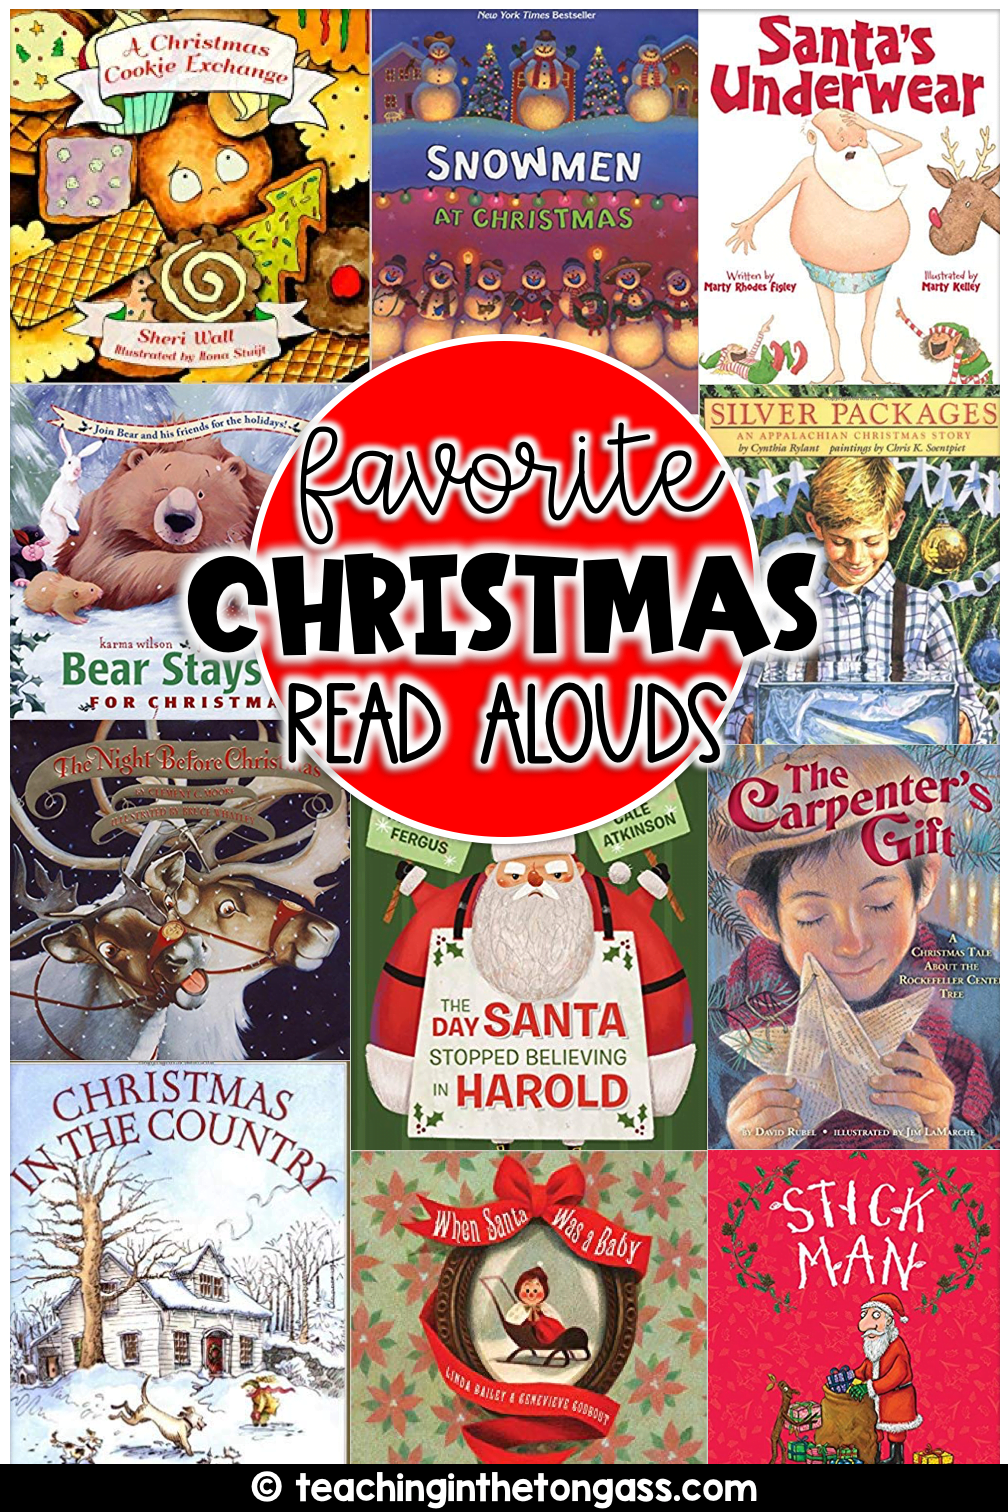 Christmas books for kids